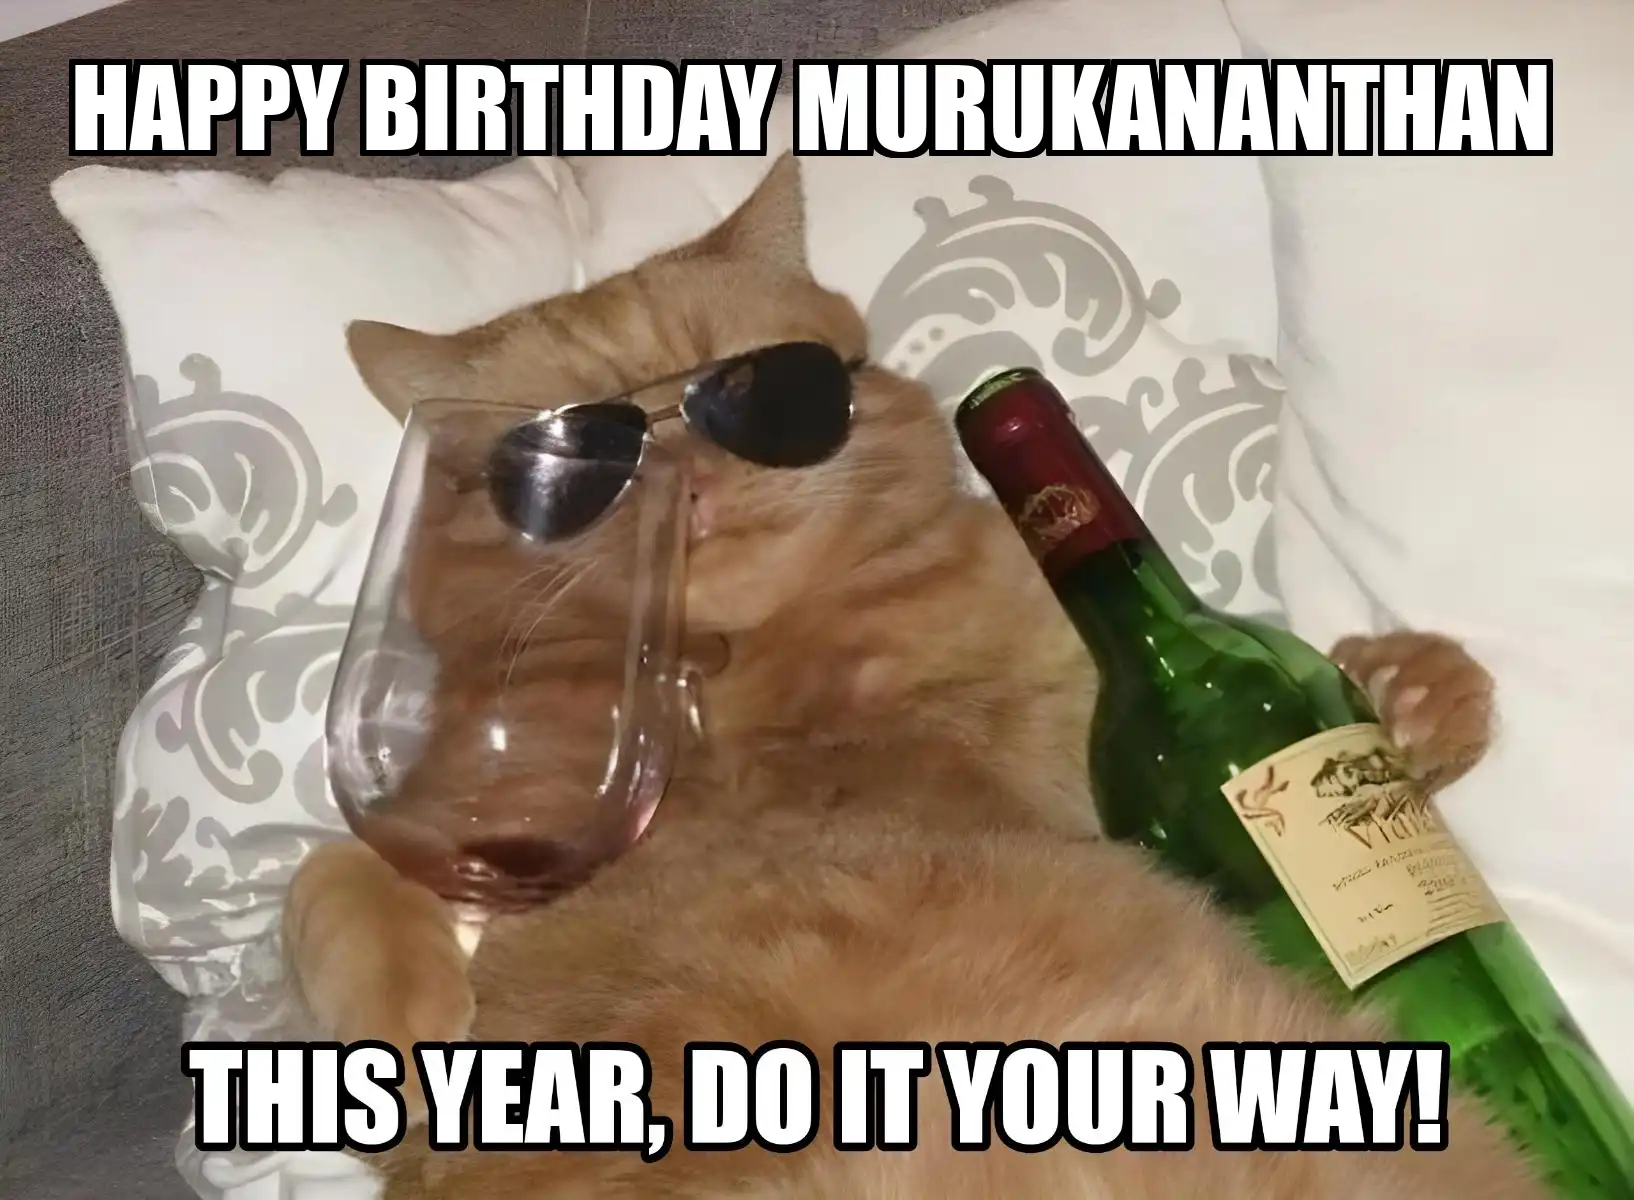 Happy Birthday Murukananthan This Year Do It Your Way Meme